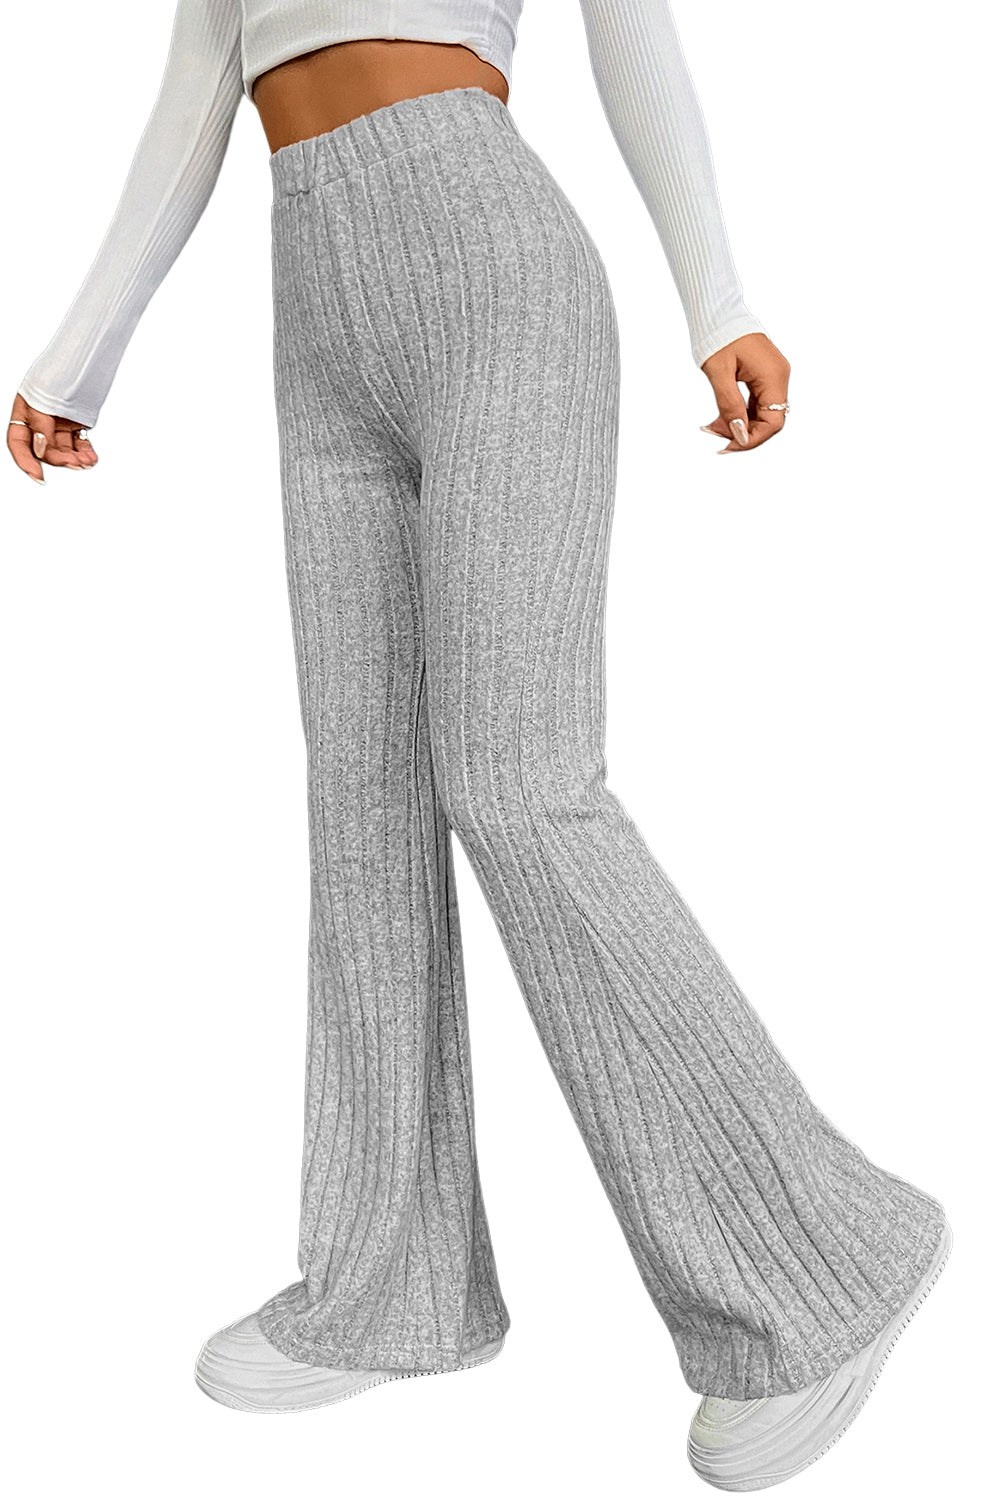 Pantalon évasé côtelé taille haute de couleur unie gris